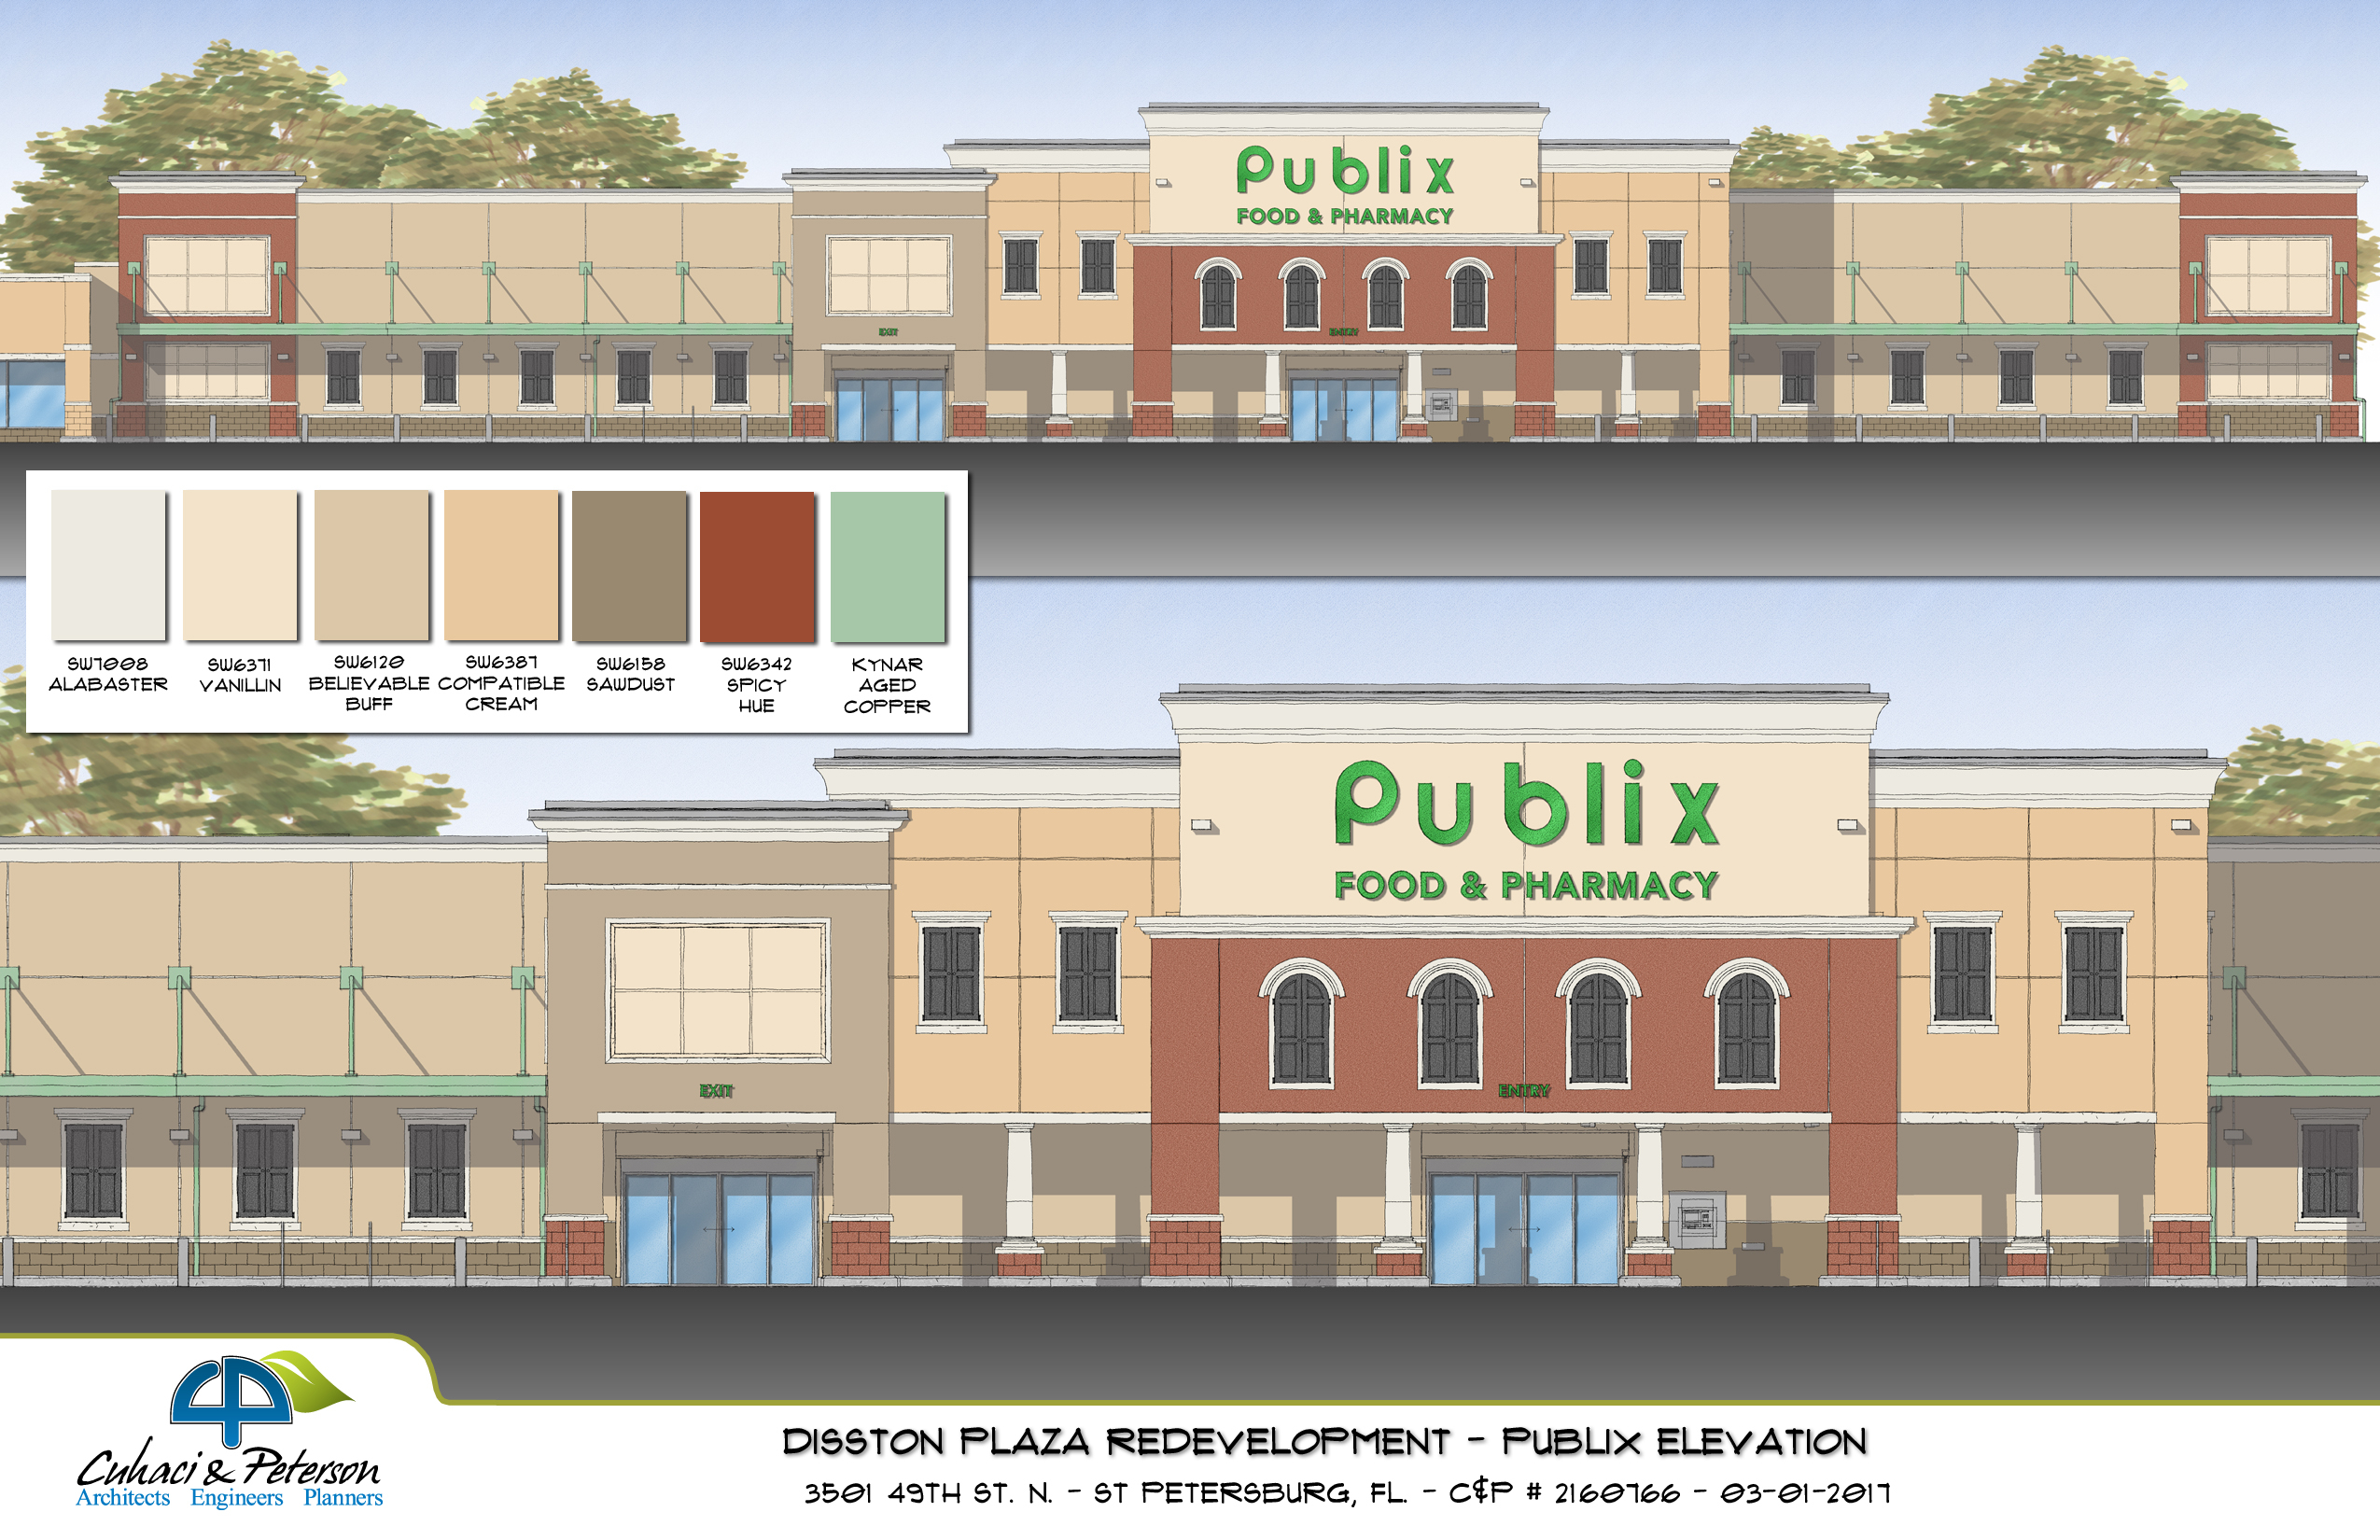 Revitalization of Disston Plaza Announced